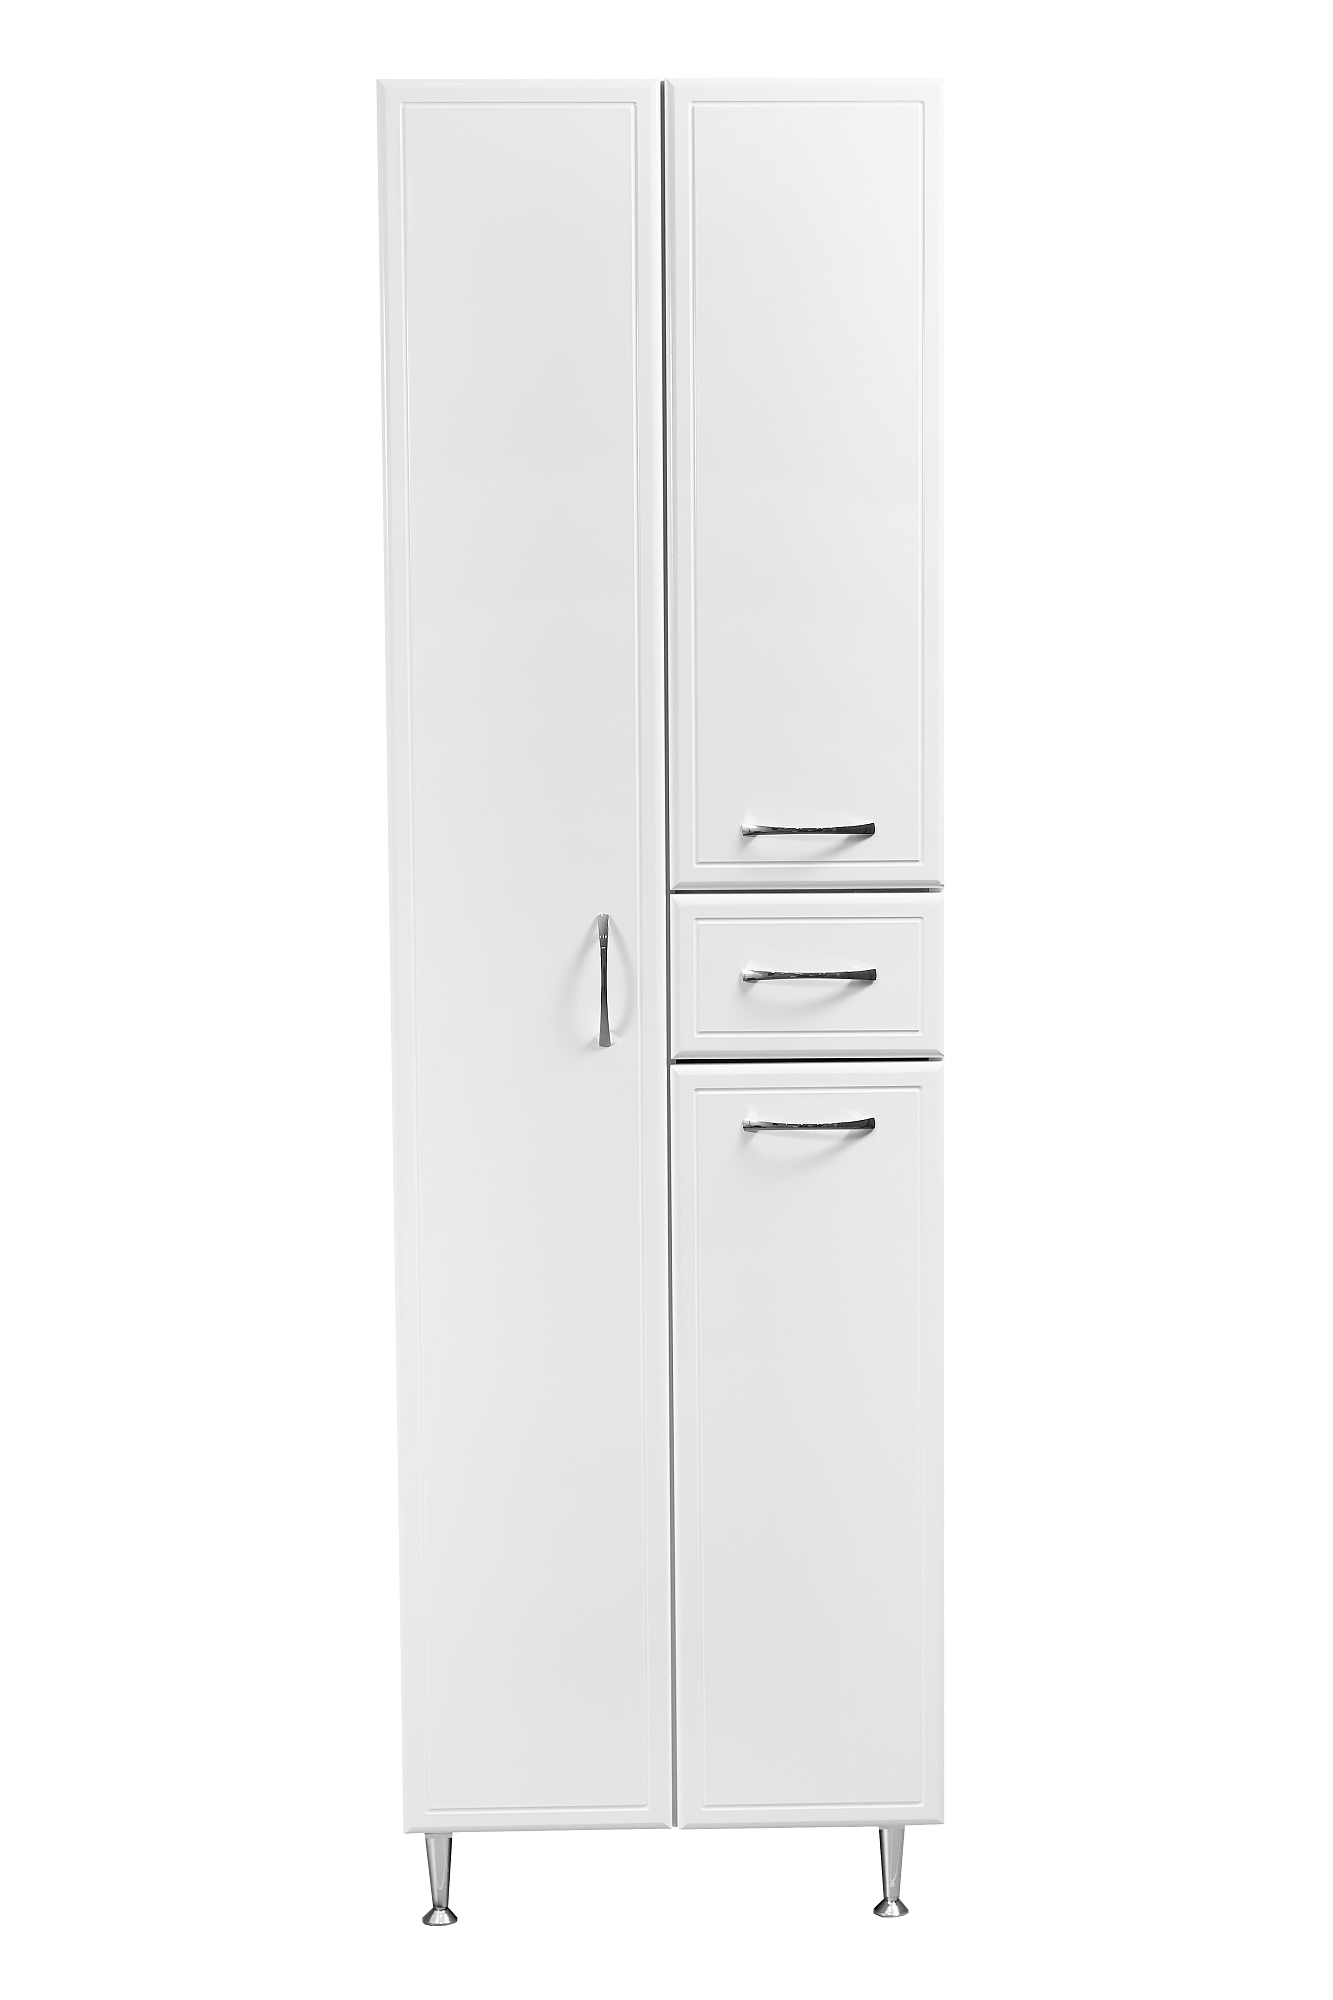 Пенал Stella Polar Концепт 54 SP-00000150 54 см напольный, 1 ящик, белый 